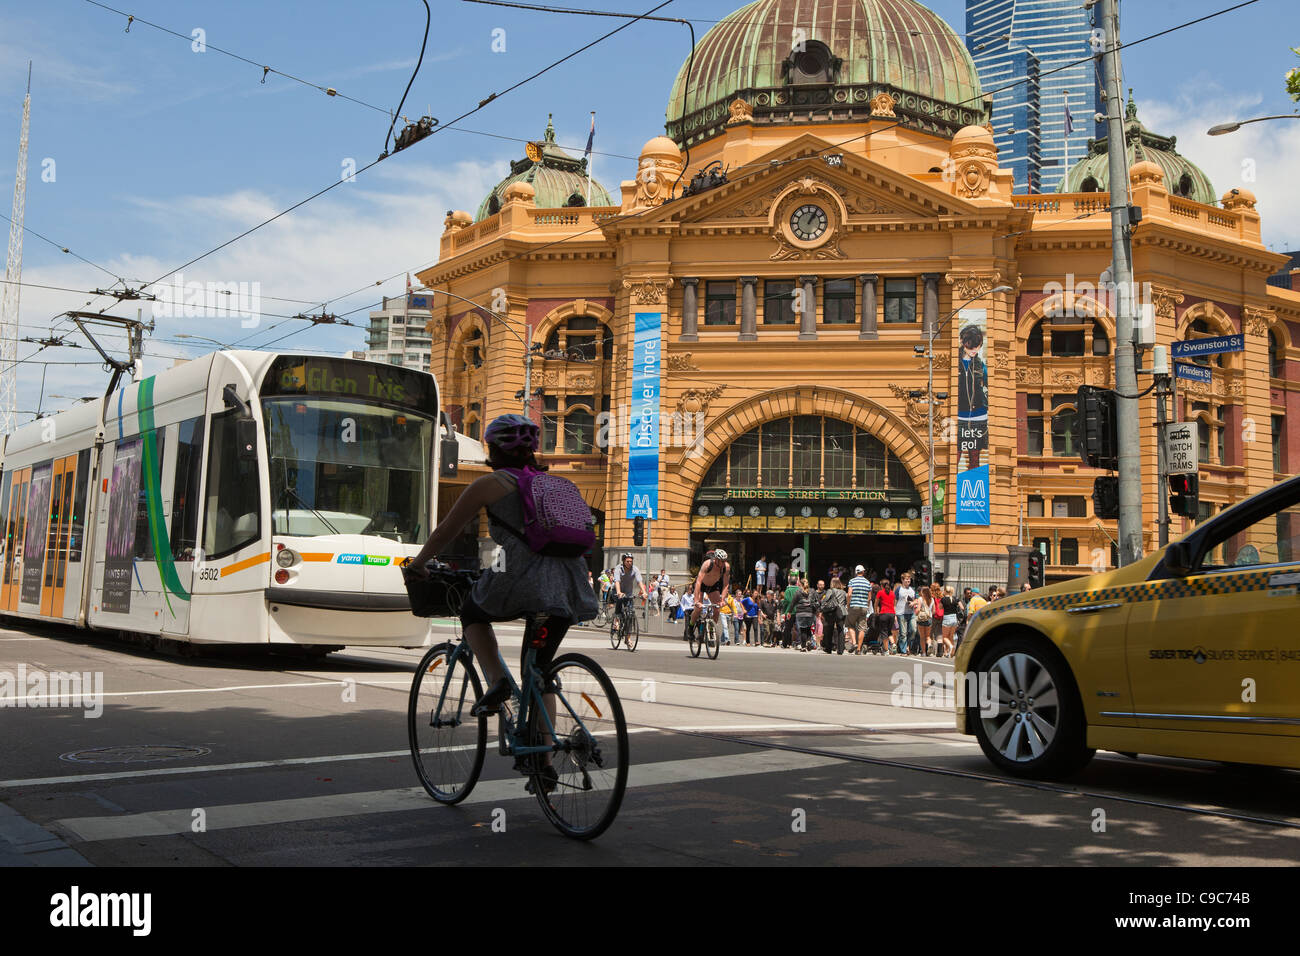 Melbourne-Sonnentag am Stadt-ÖPNV-Systeme. Taxi-Fahrrad und Straßenbahnen und sogar die Stadt Zug in Flinders Street Station. Stockfoto